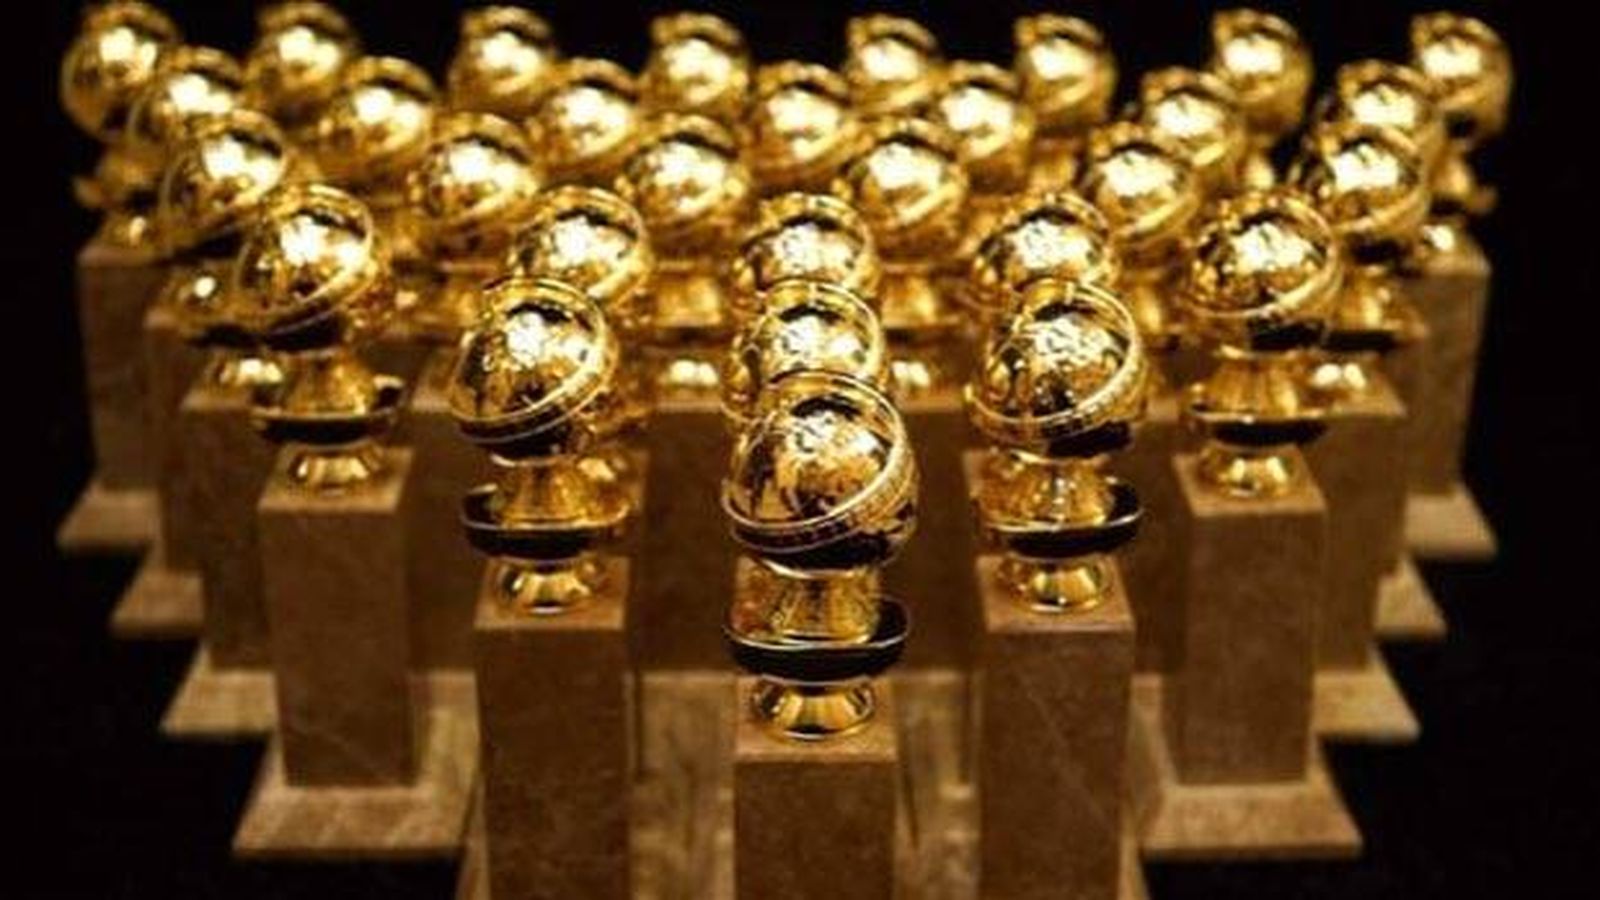 Foto: Ya están preparados los Globos de Oro que se repartirán en Los Ángeles. (Golden Globe Awards)